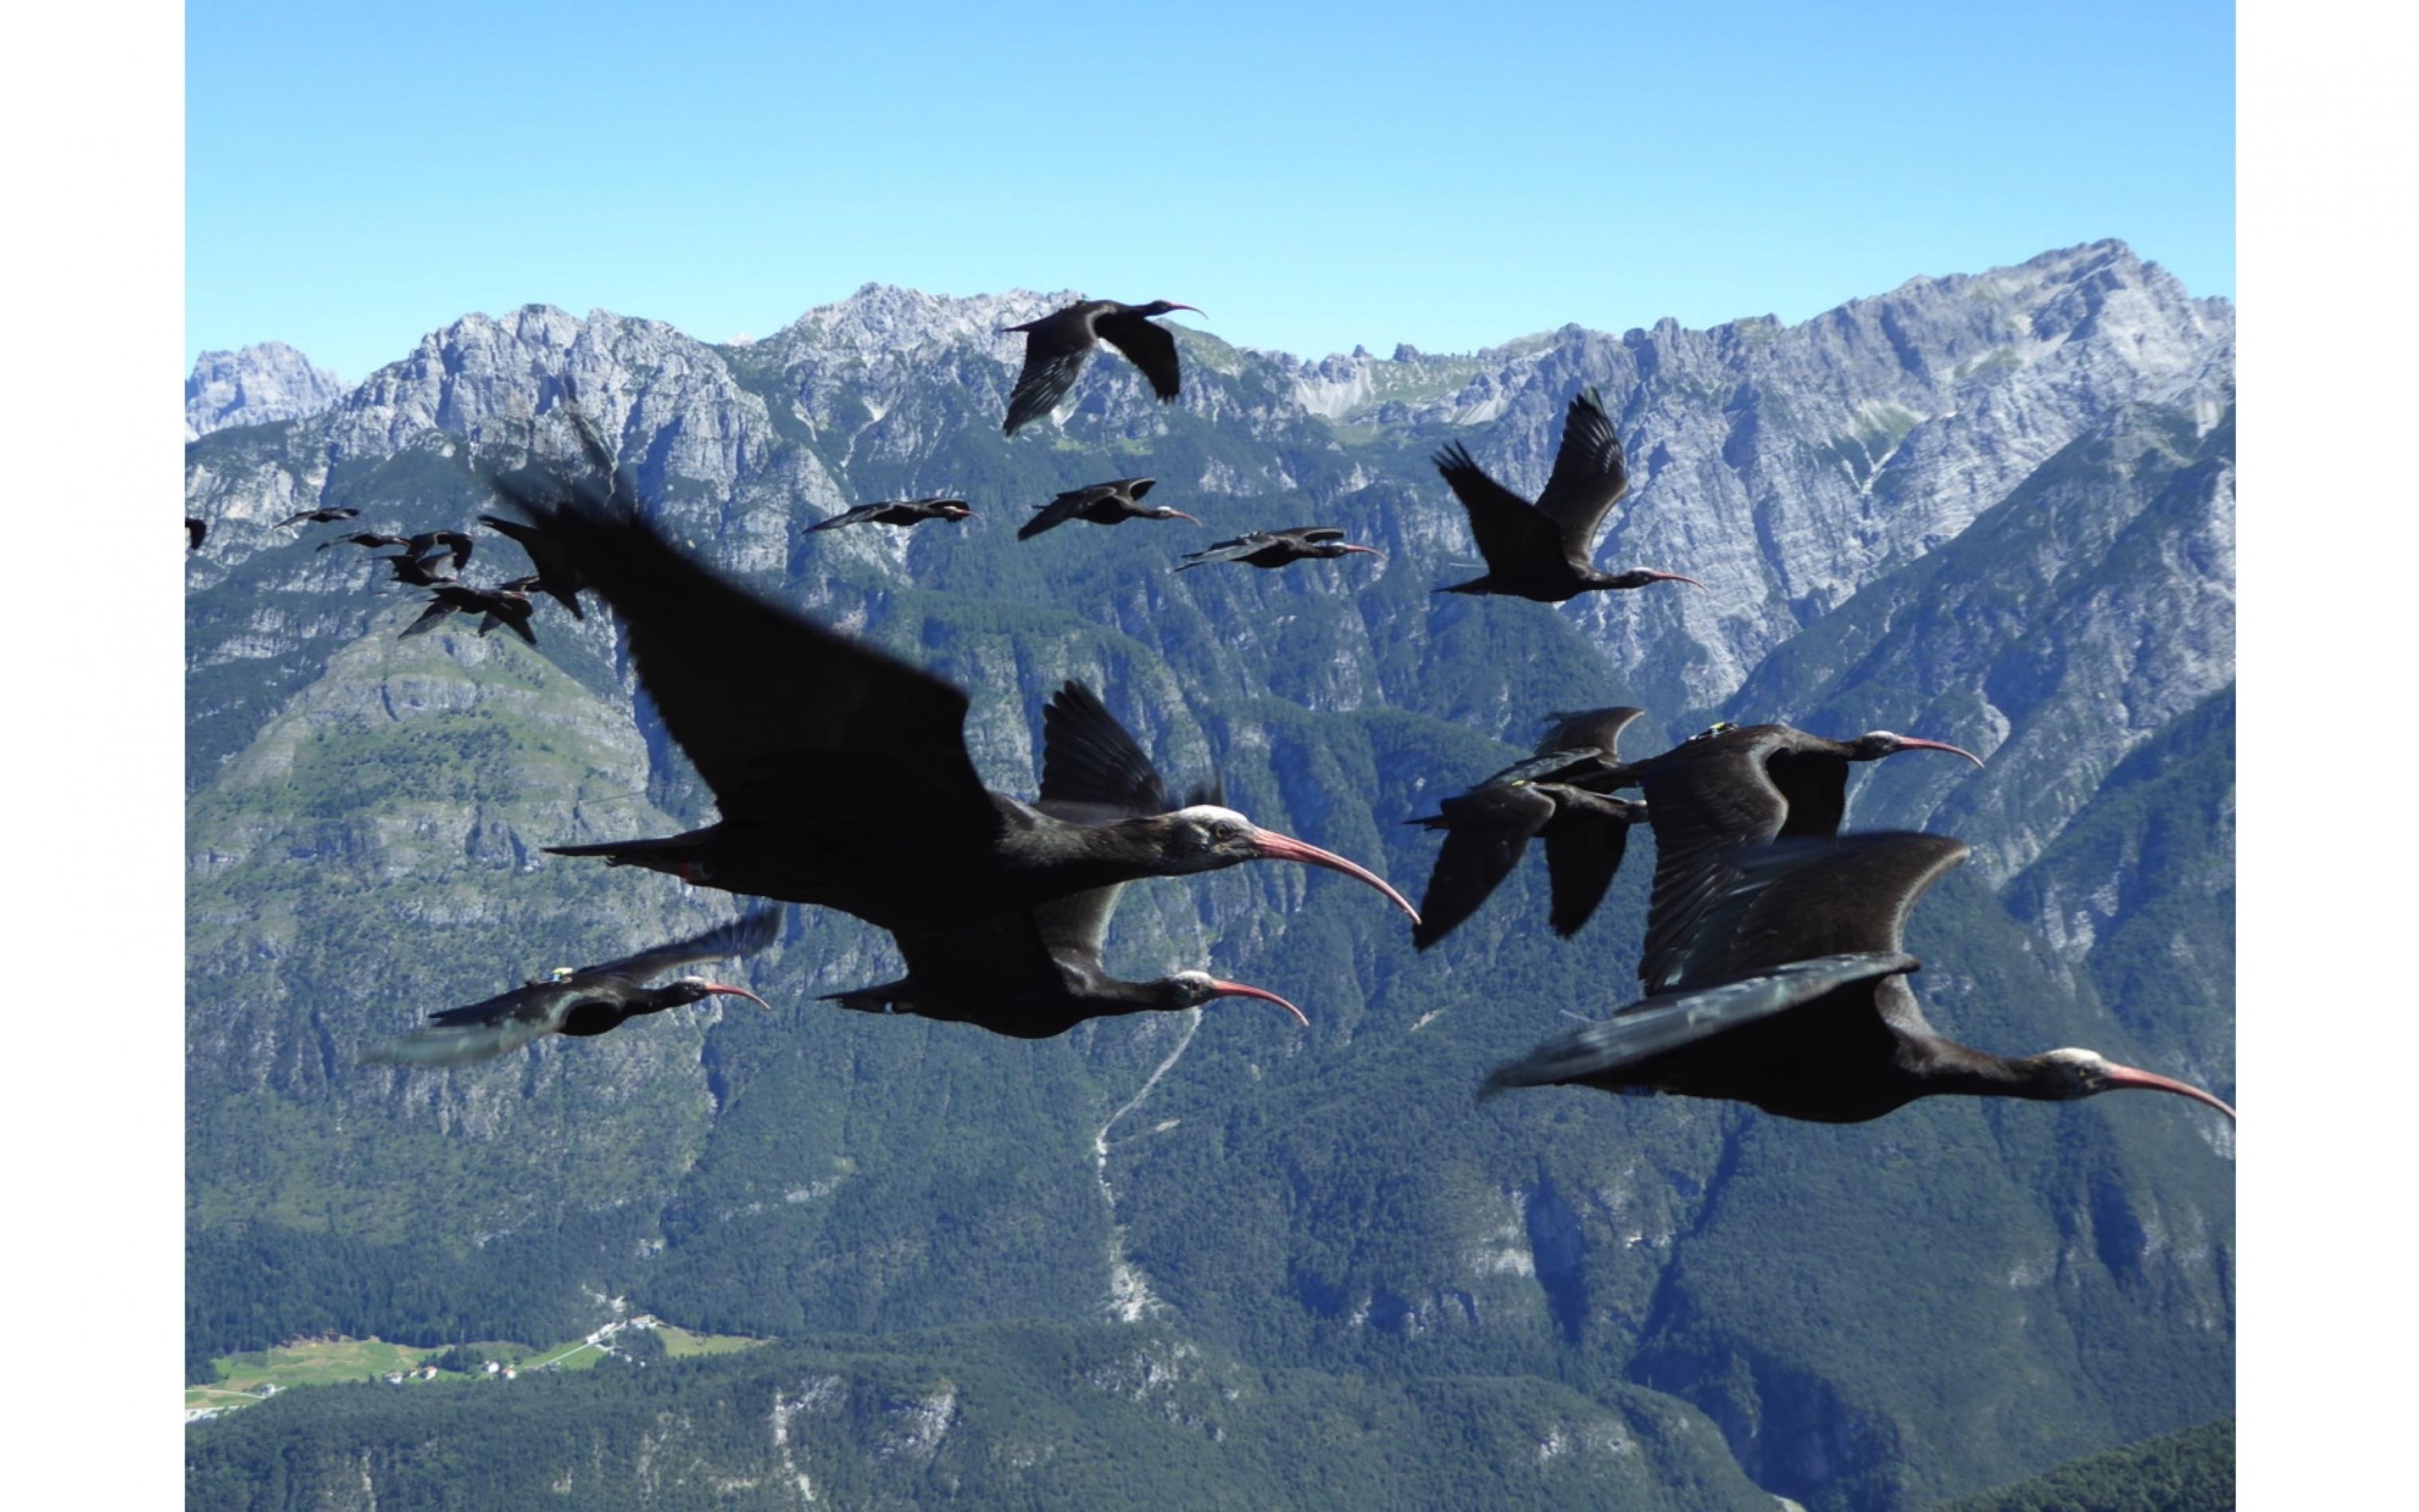 Waldrappe fliegen in Formation vor einem atemberaubenden Bergpanorama in den Alpen